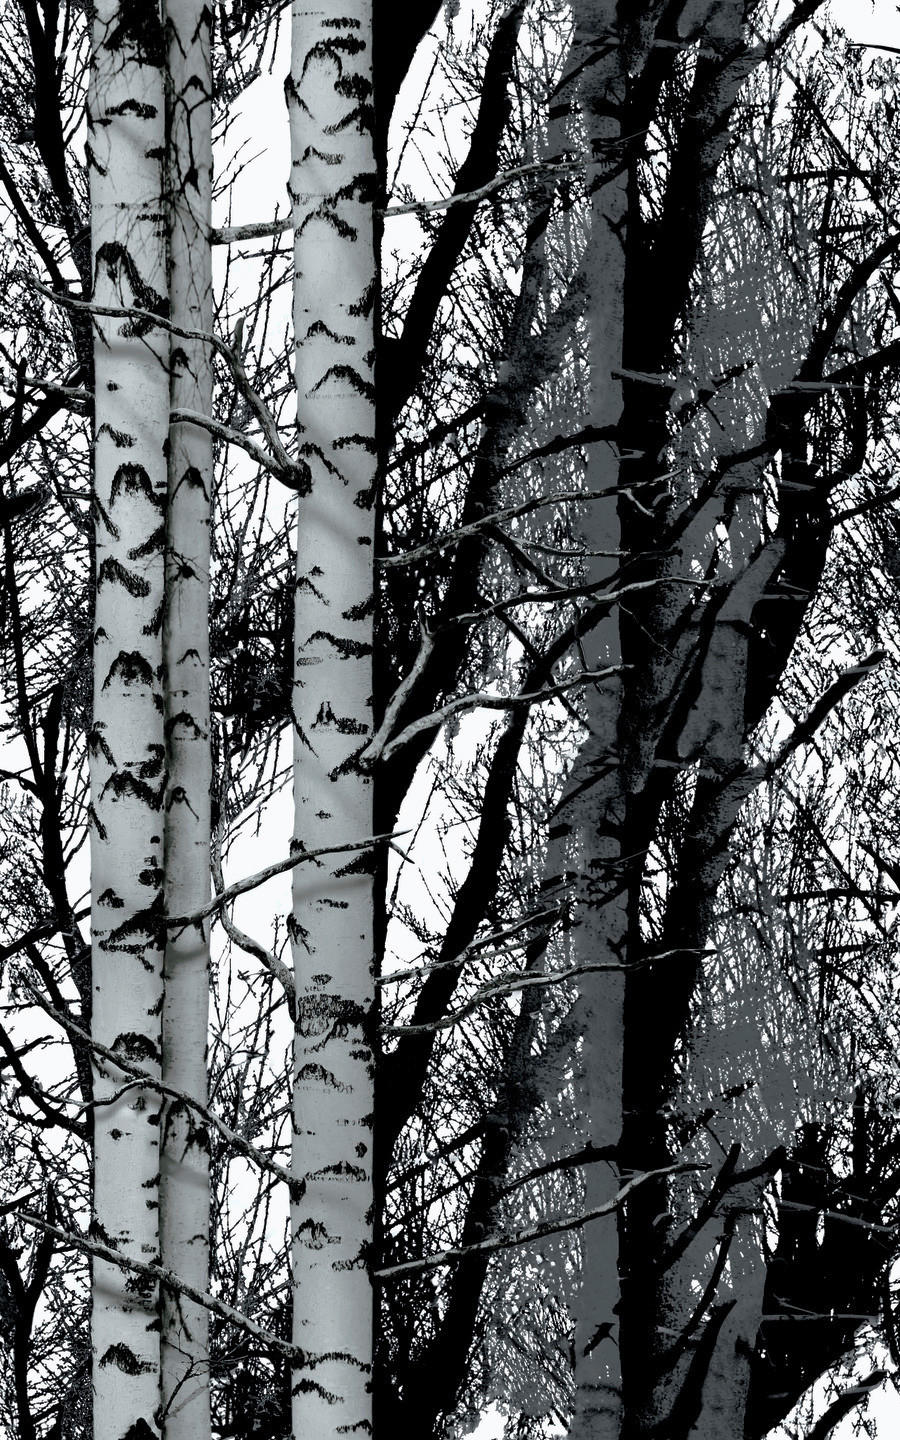 d-c-fix Dekofolie Wood schwarz weiß B/L: ca. 45x200 cm Klebefolie_Wood - weiß/schwarz (45,00/200,00cm)